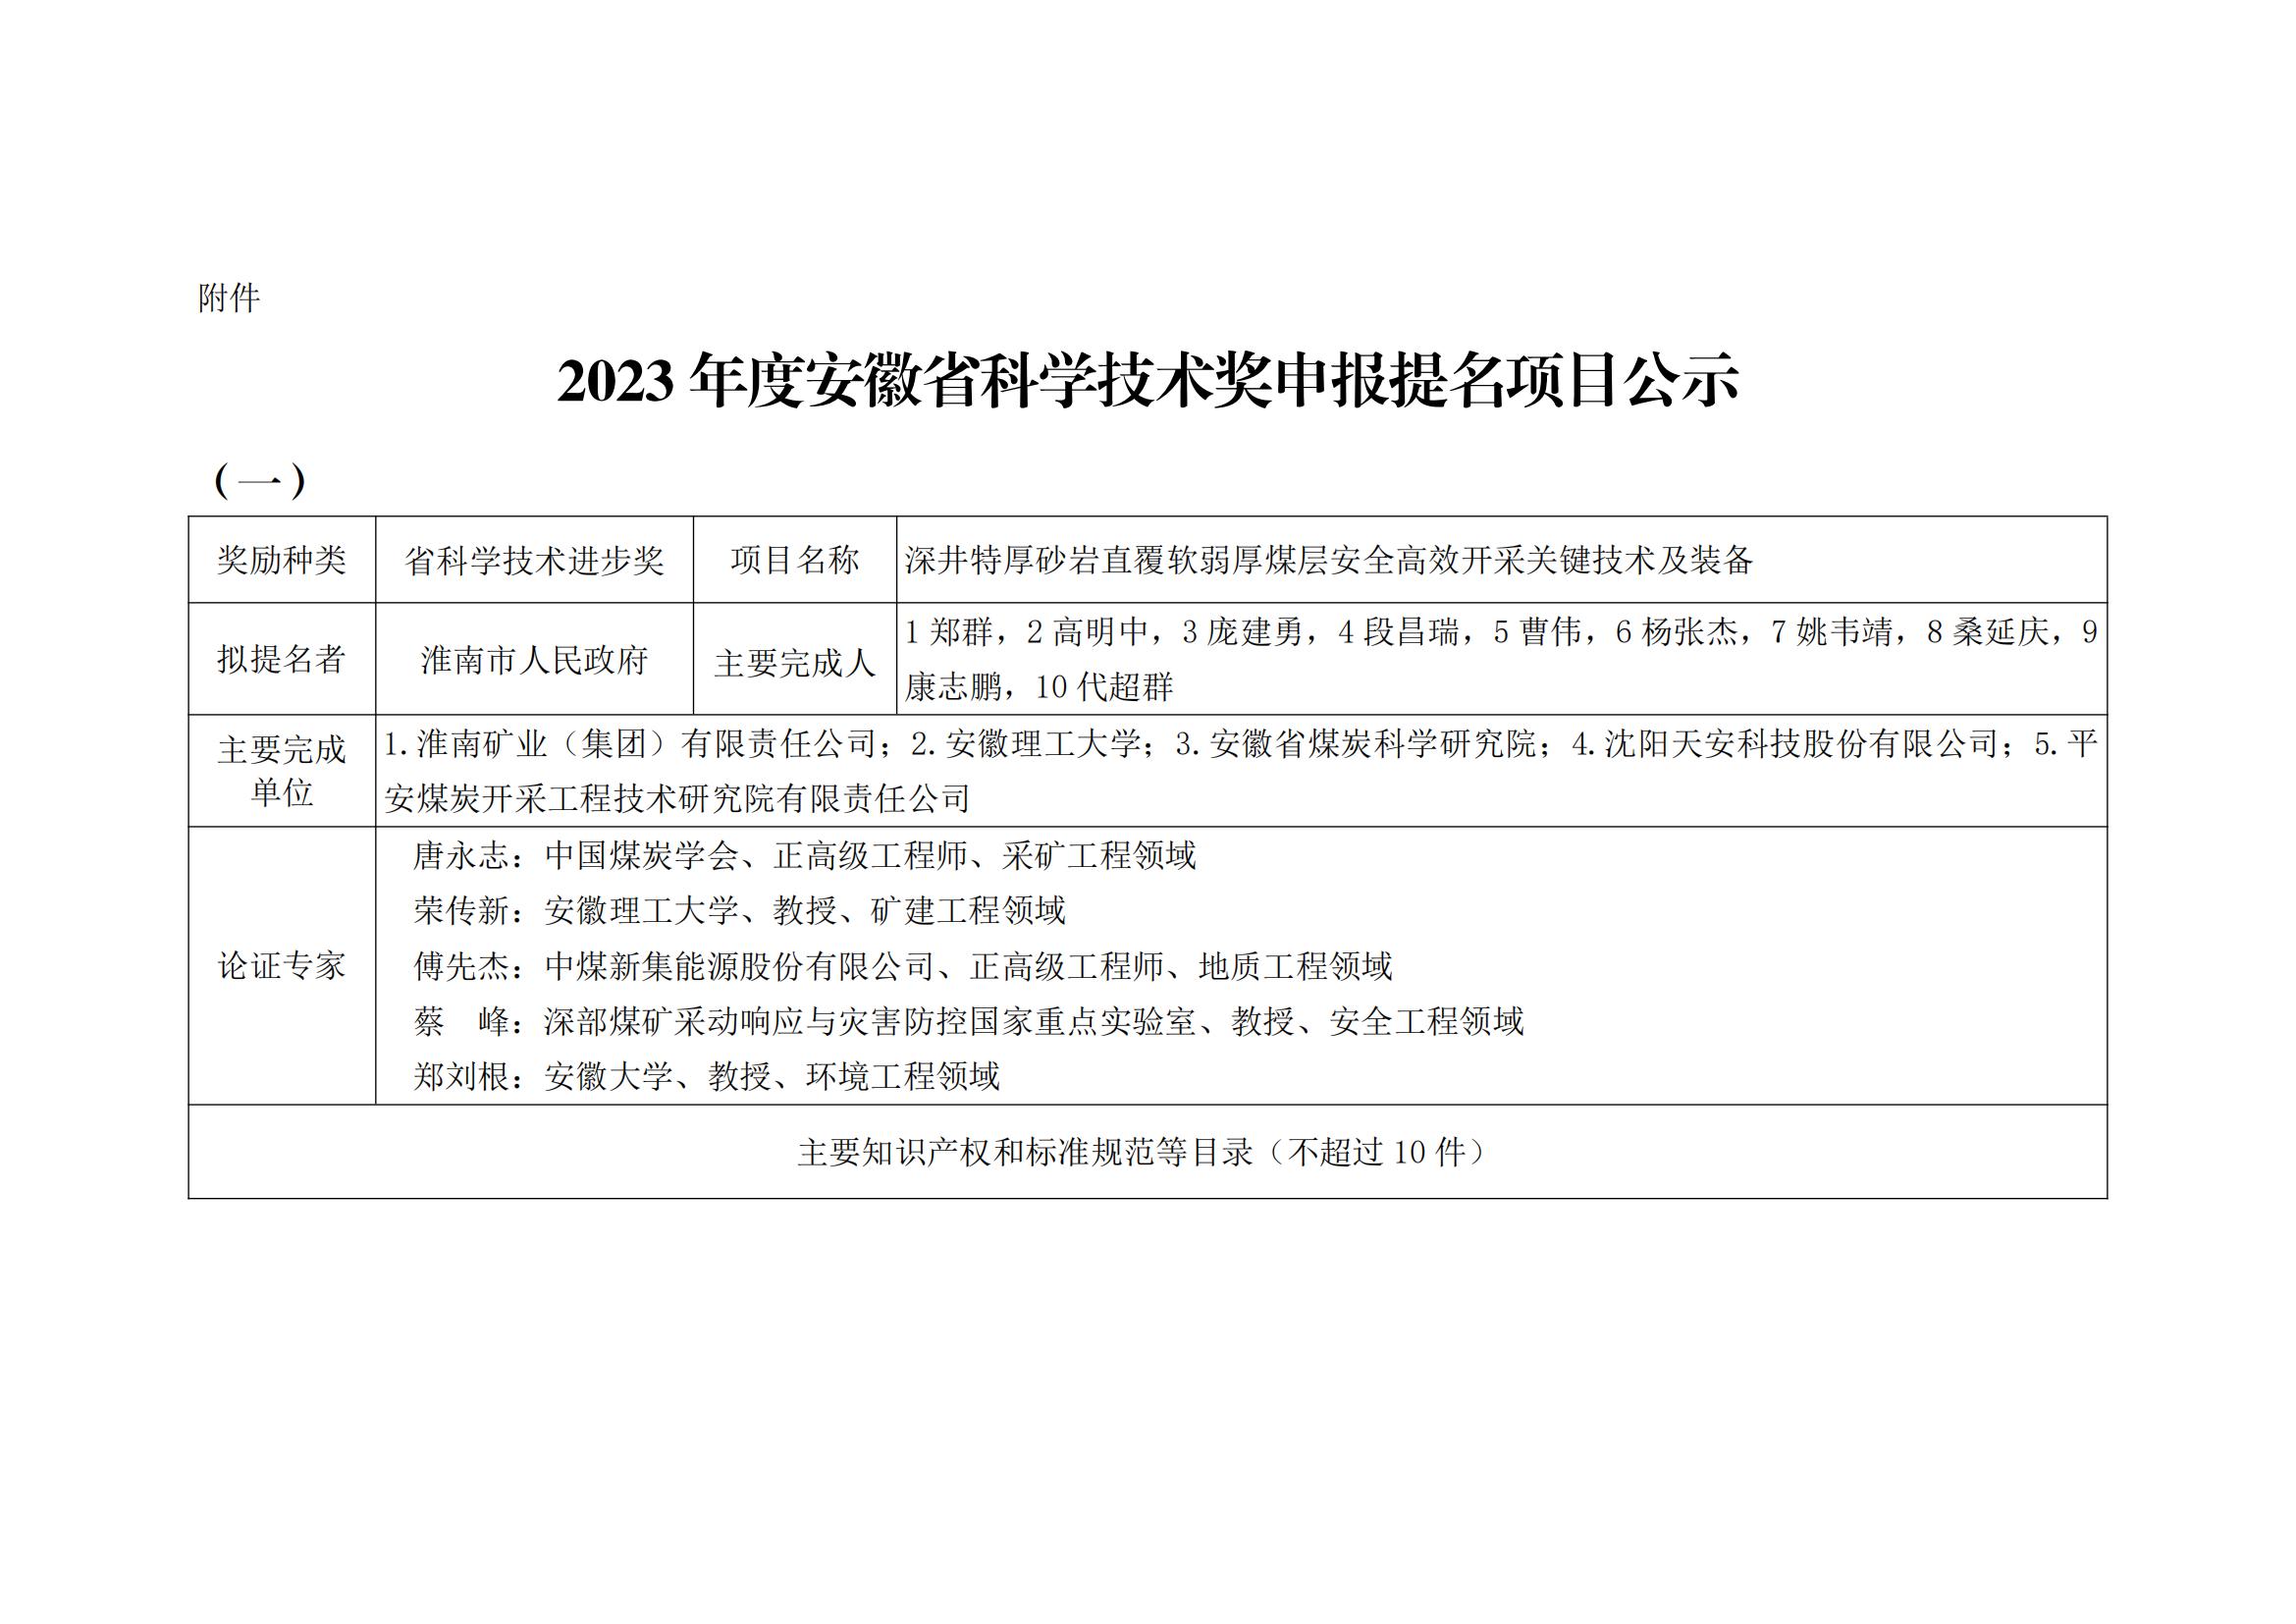 关于2023年度安徽省科学技术奖申报提名项目的公示(2)_00(1).jpg